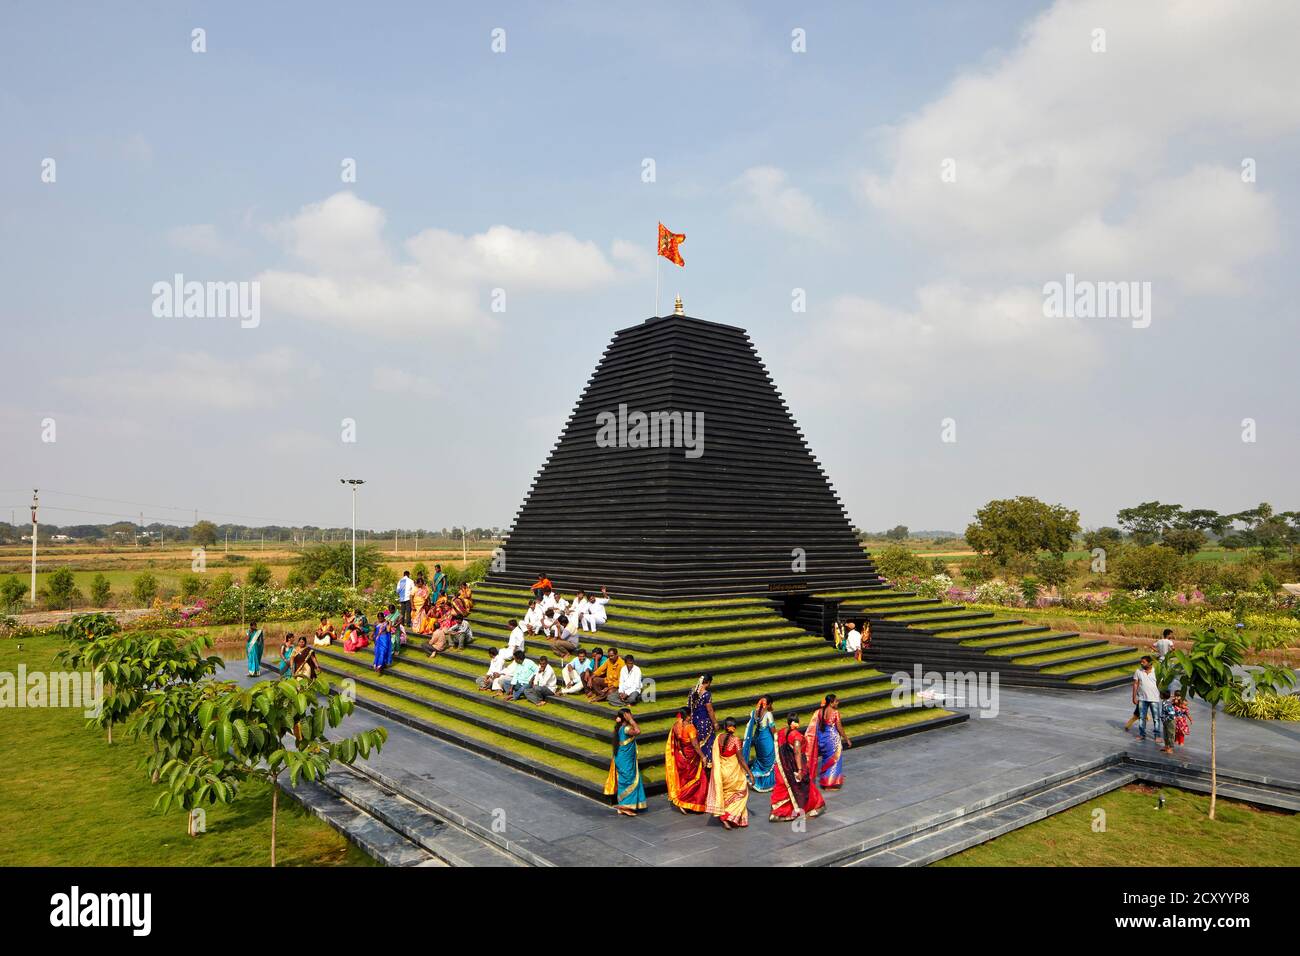 Gesamtaussicht mit lokalen Dorfbewohnern. Balaji-Tempel, Andhra Pradesh, Indien. Architekt: Sameep Padora und Mitarbeiter , 2020. Stockfoto